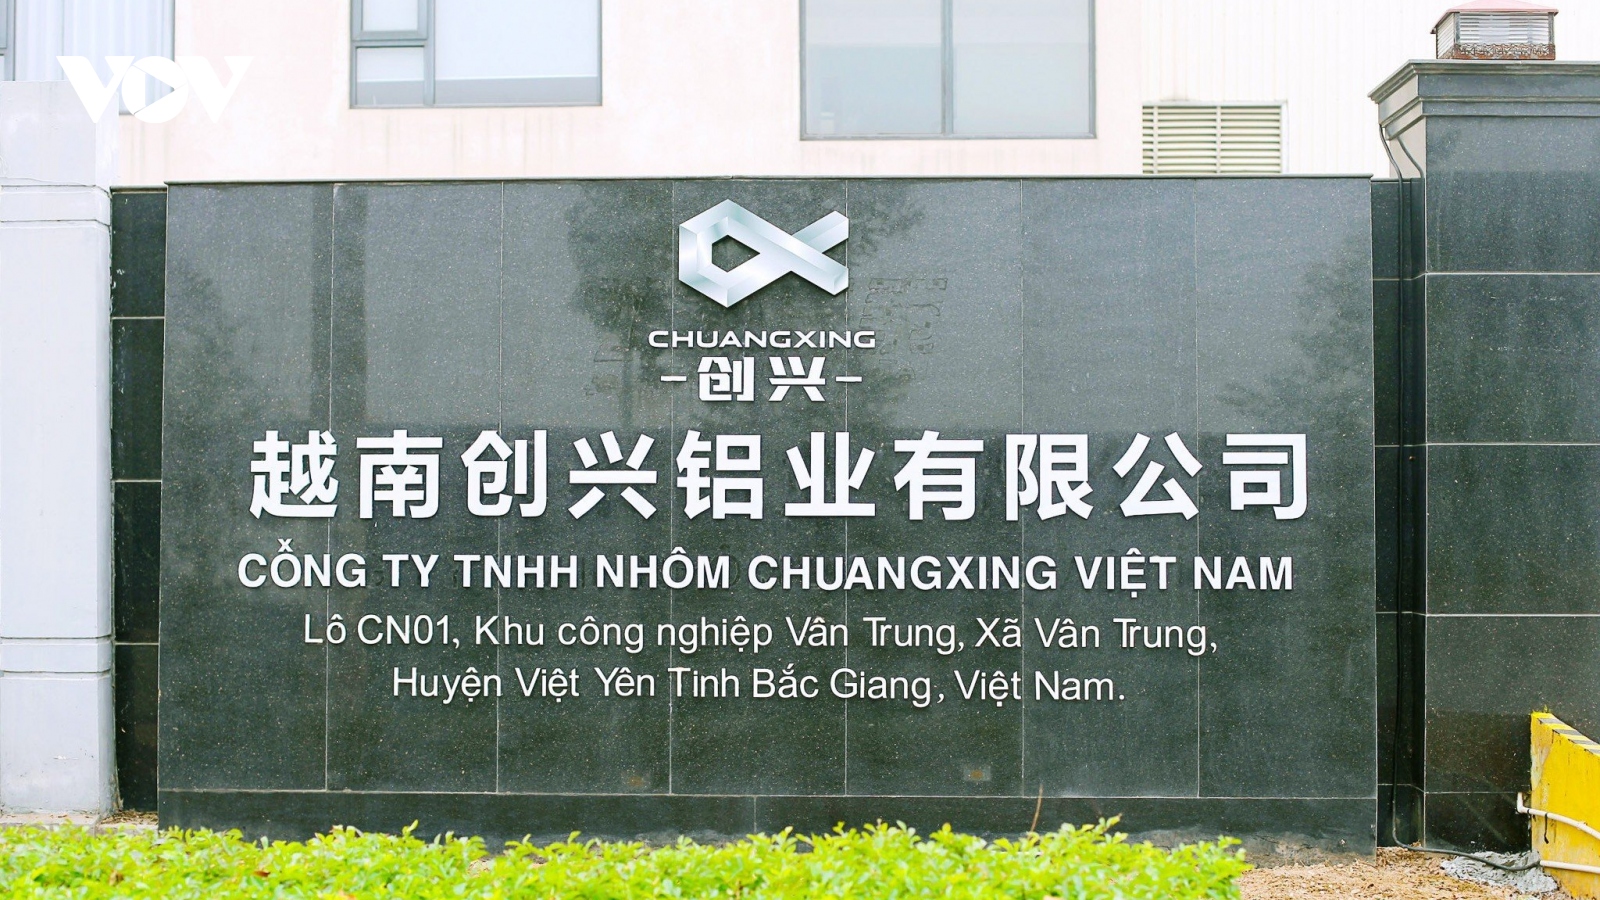 Xây dựng không phép, Công ty TNHH Nhôm Chuangxing Việt Nam bị xử phạt nặng